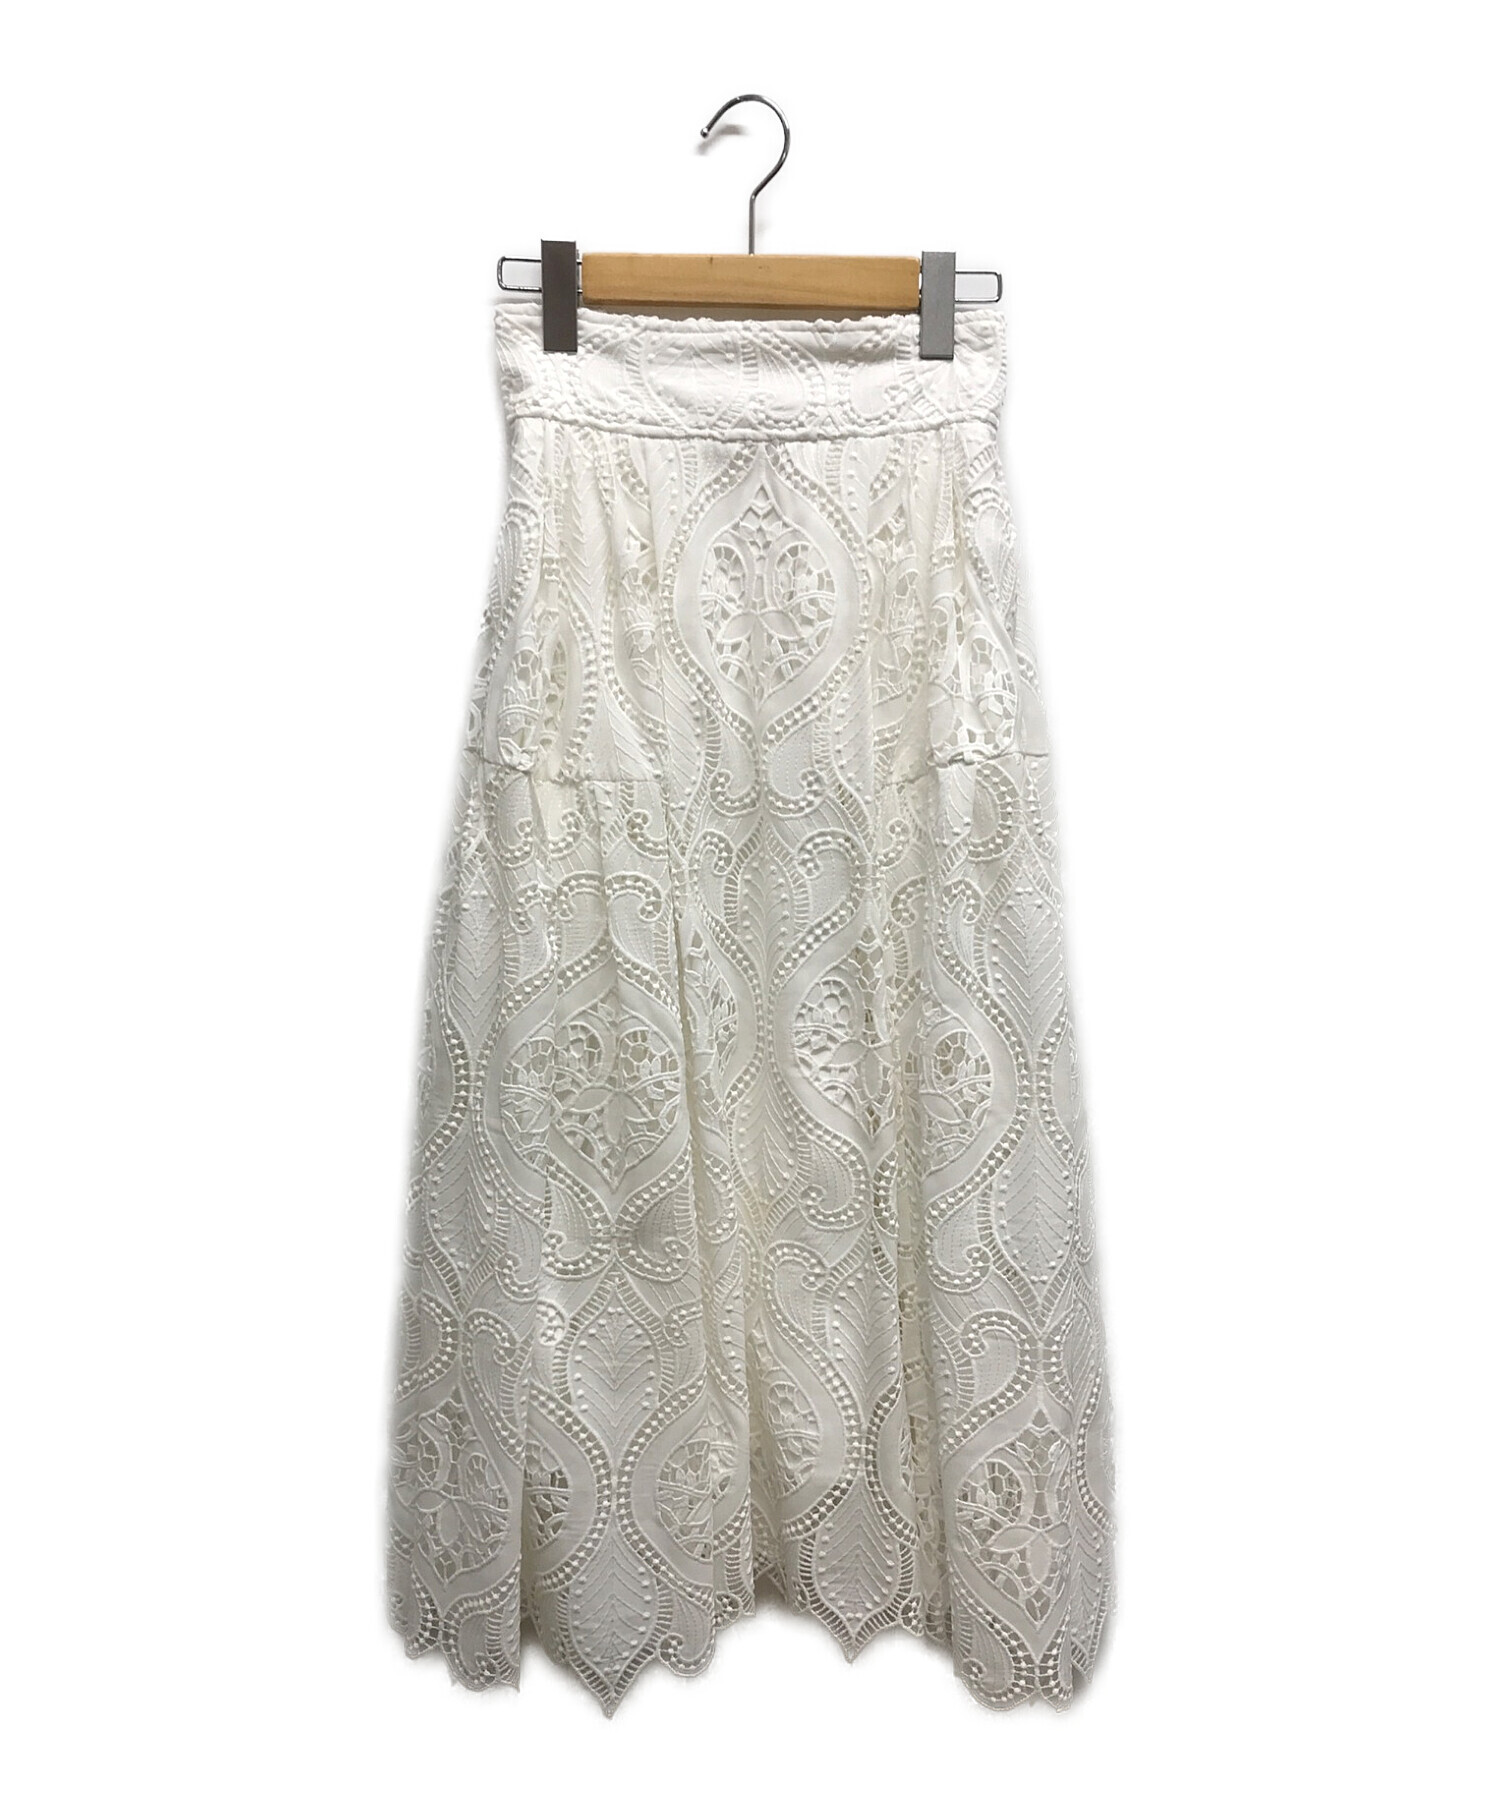 JENNE (ジェンヌ) 総レースタックフレンチスカート ホワイト サイズ:M